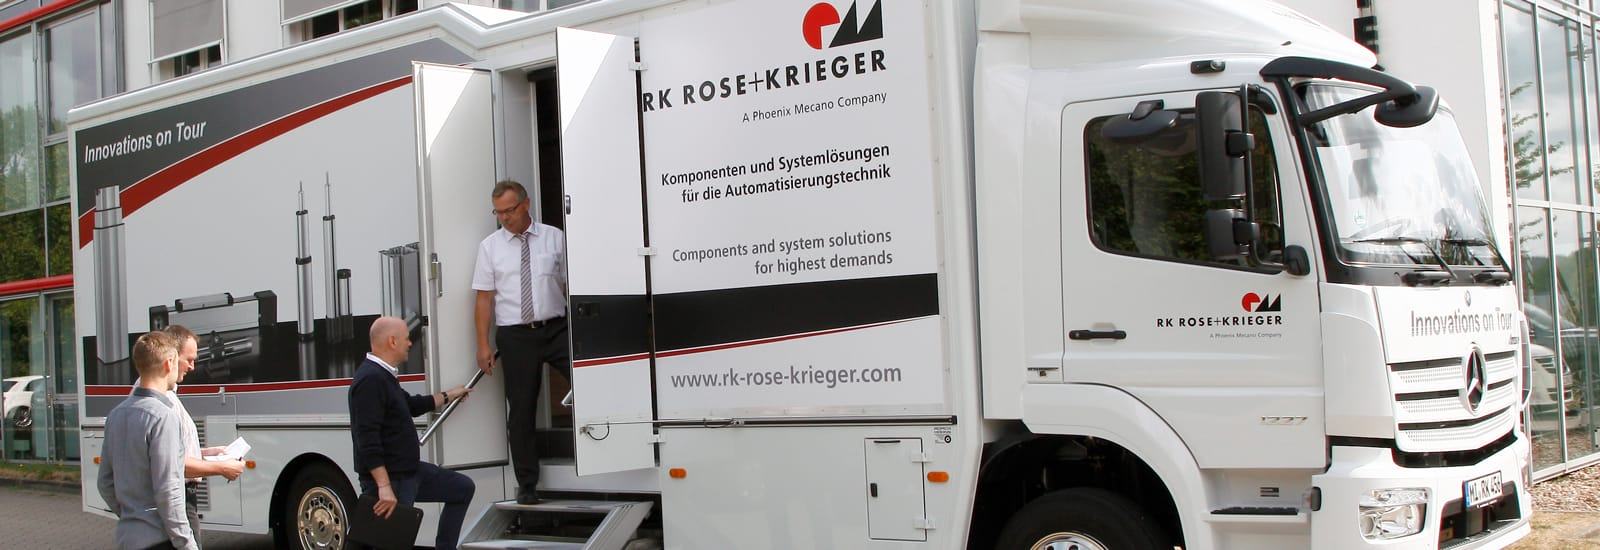 Samochód prezentacyjny RK Rose Krieger